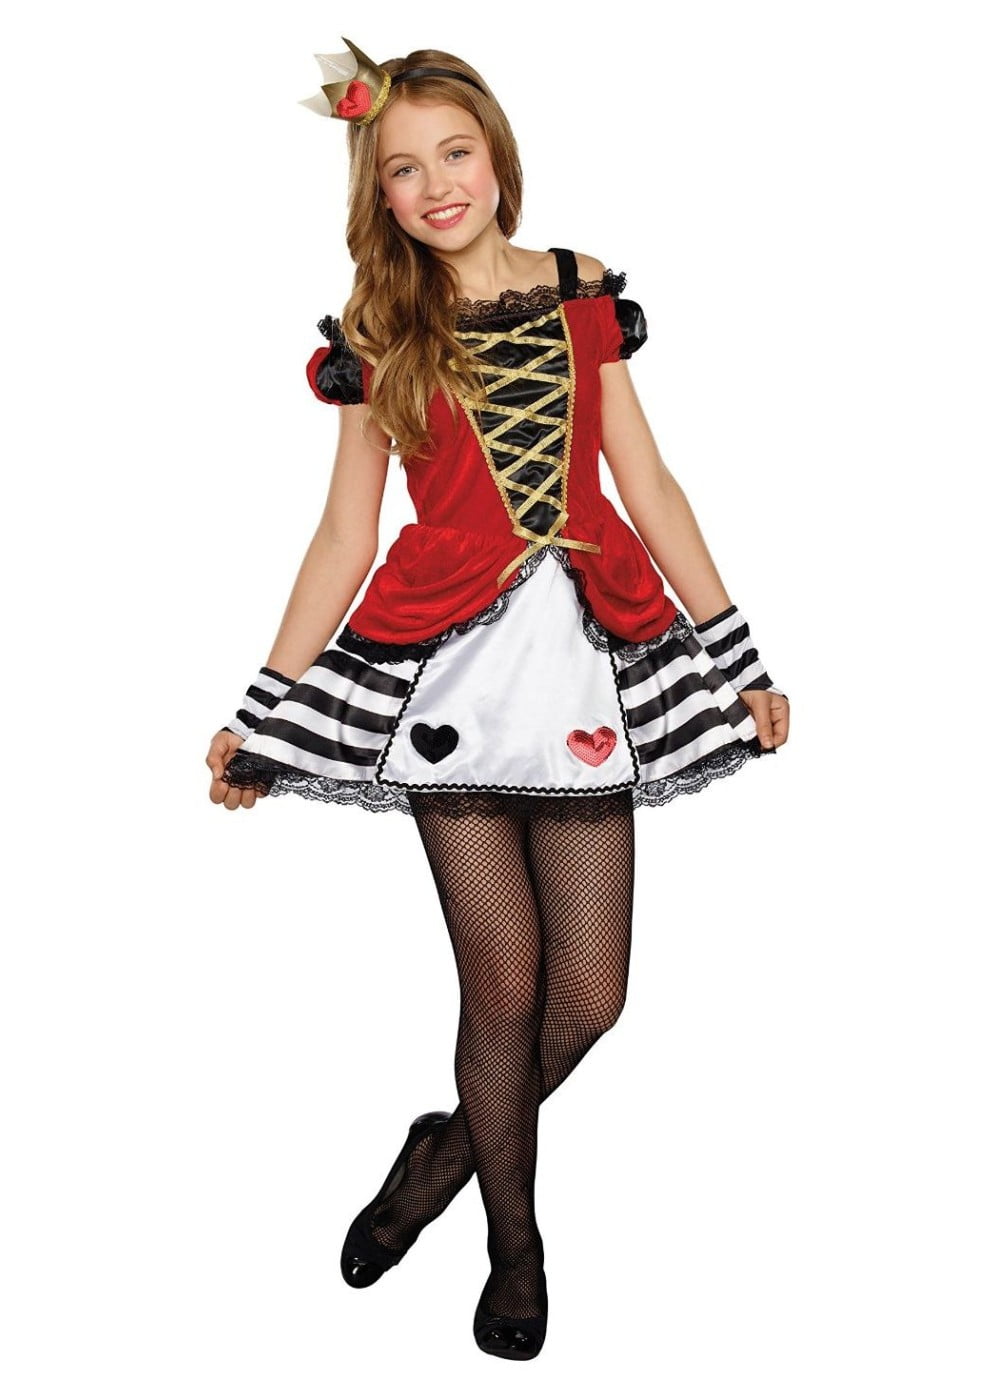 Queen of Heart Girls  Tween Costume  Walmart com Walmart com